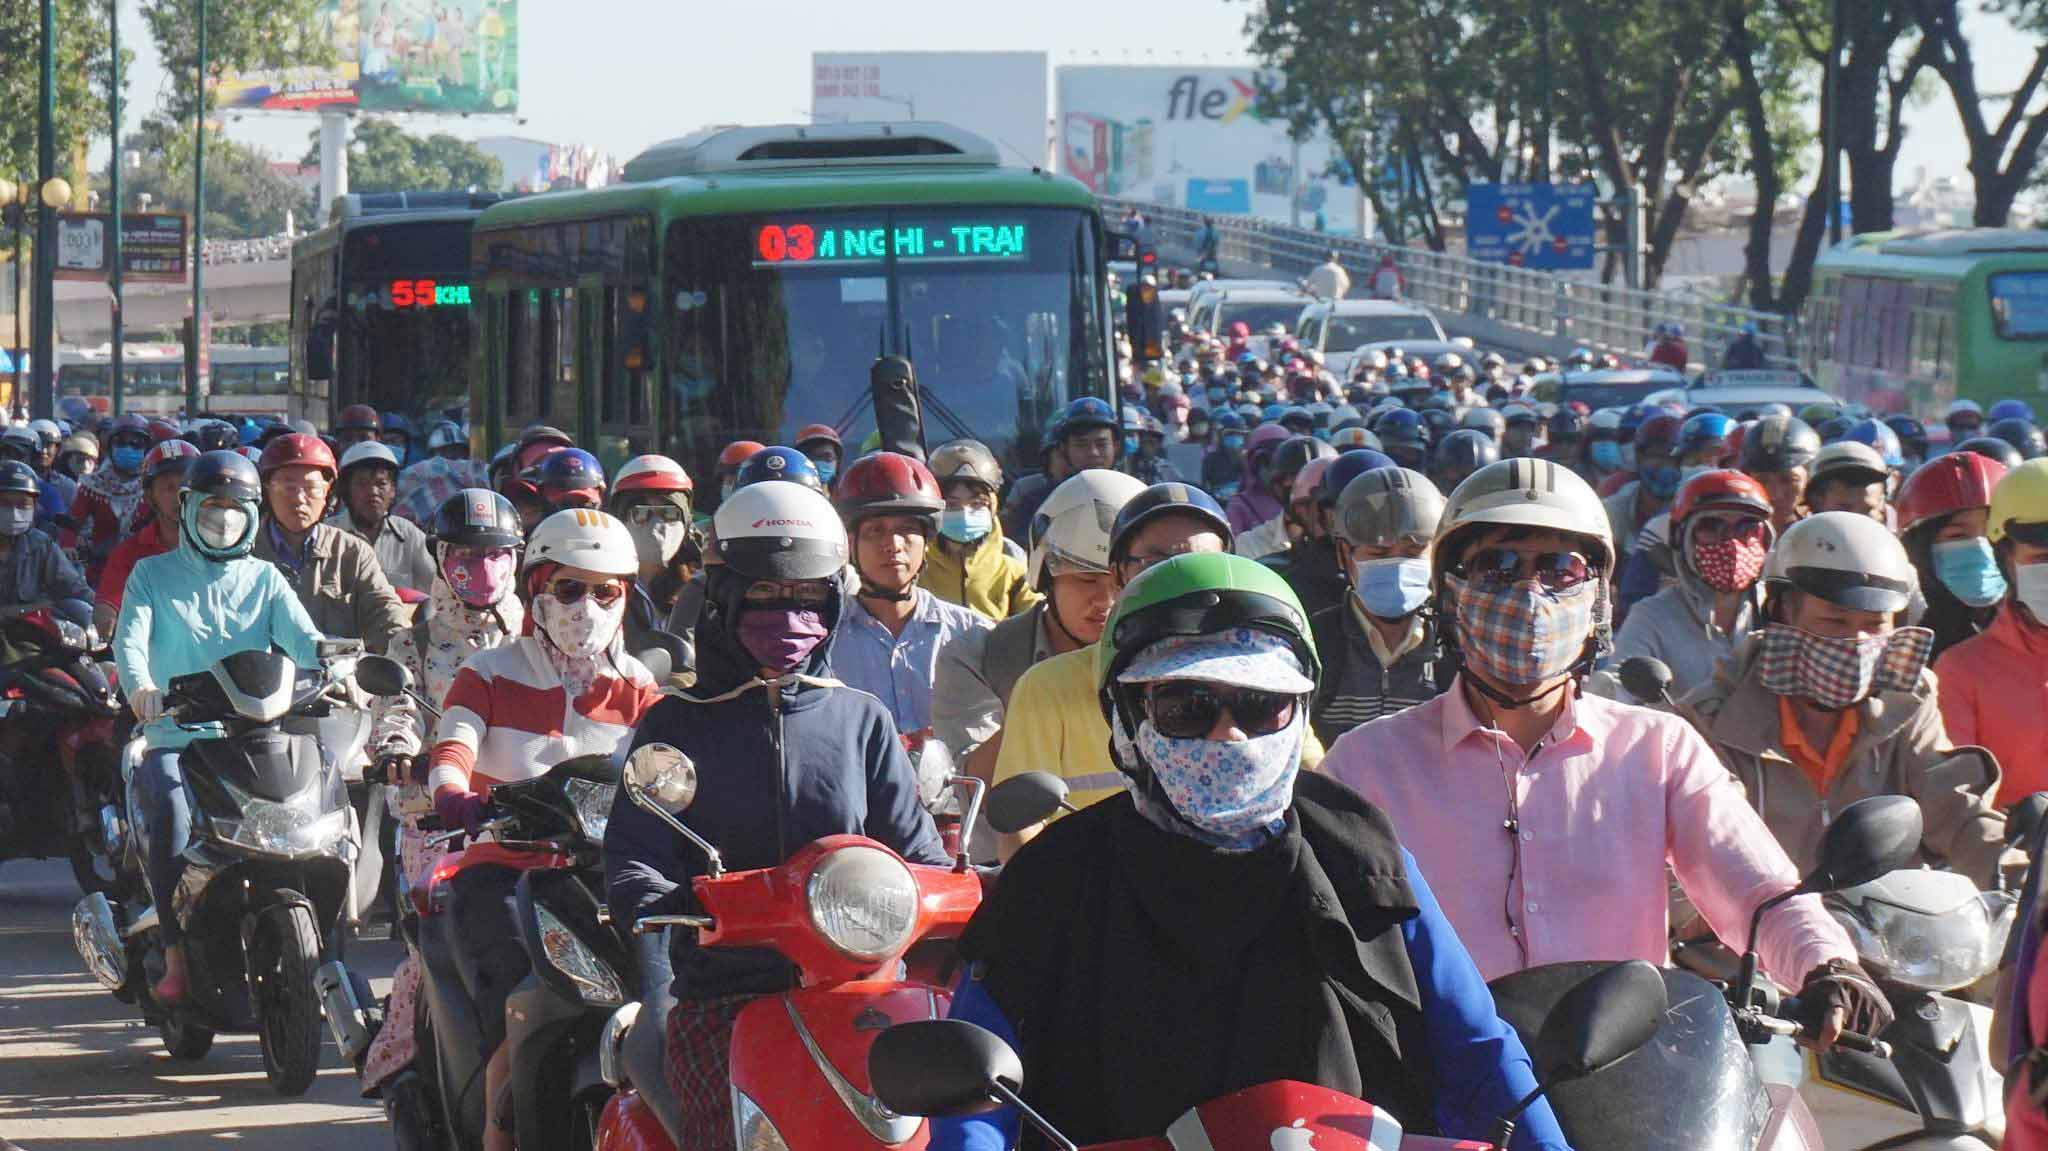 xe buýt,kẹt xe,ưu tiên xe buýt,làn đường riêng cho xe buýt,Sài Gòn,hạn chế xe cá nhân